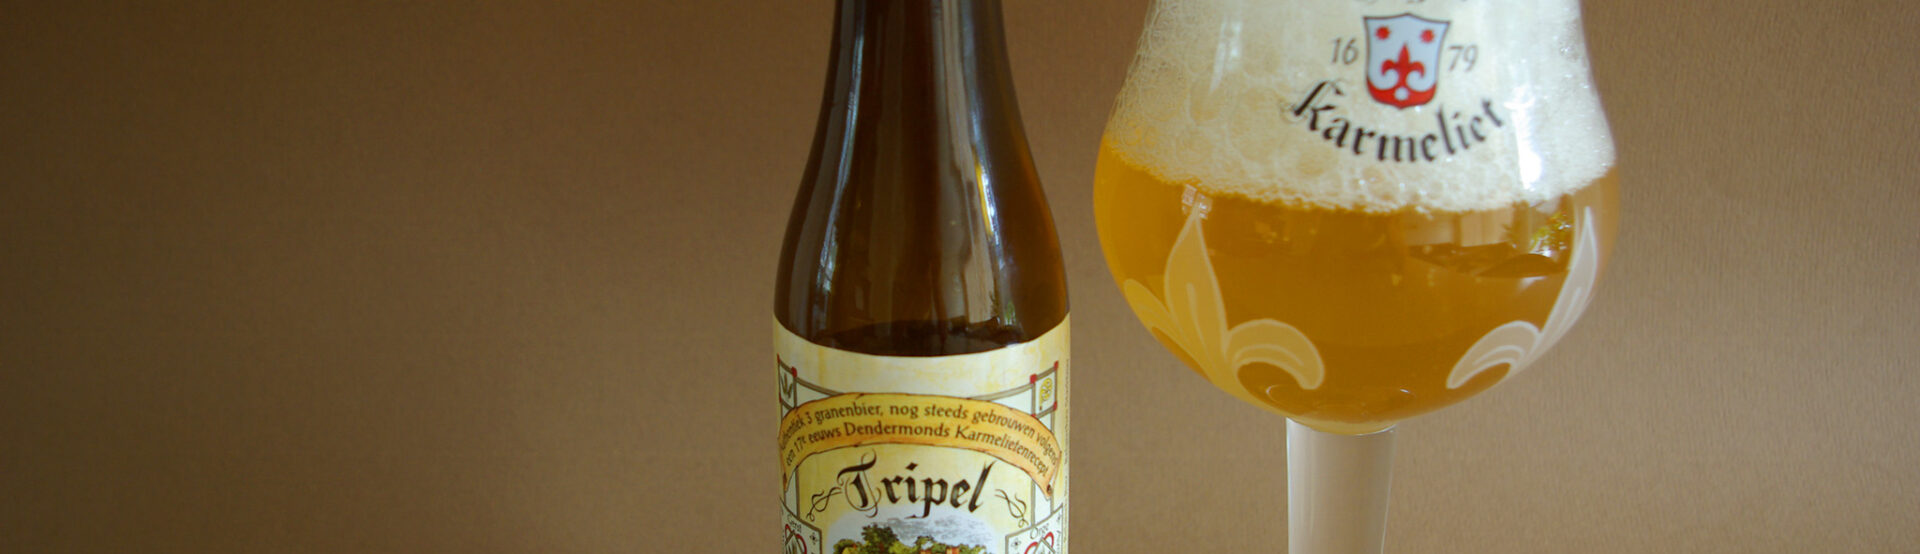 Tripel Karmeliet, brouwerij Bosteels